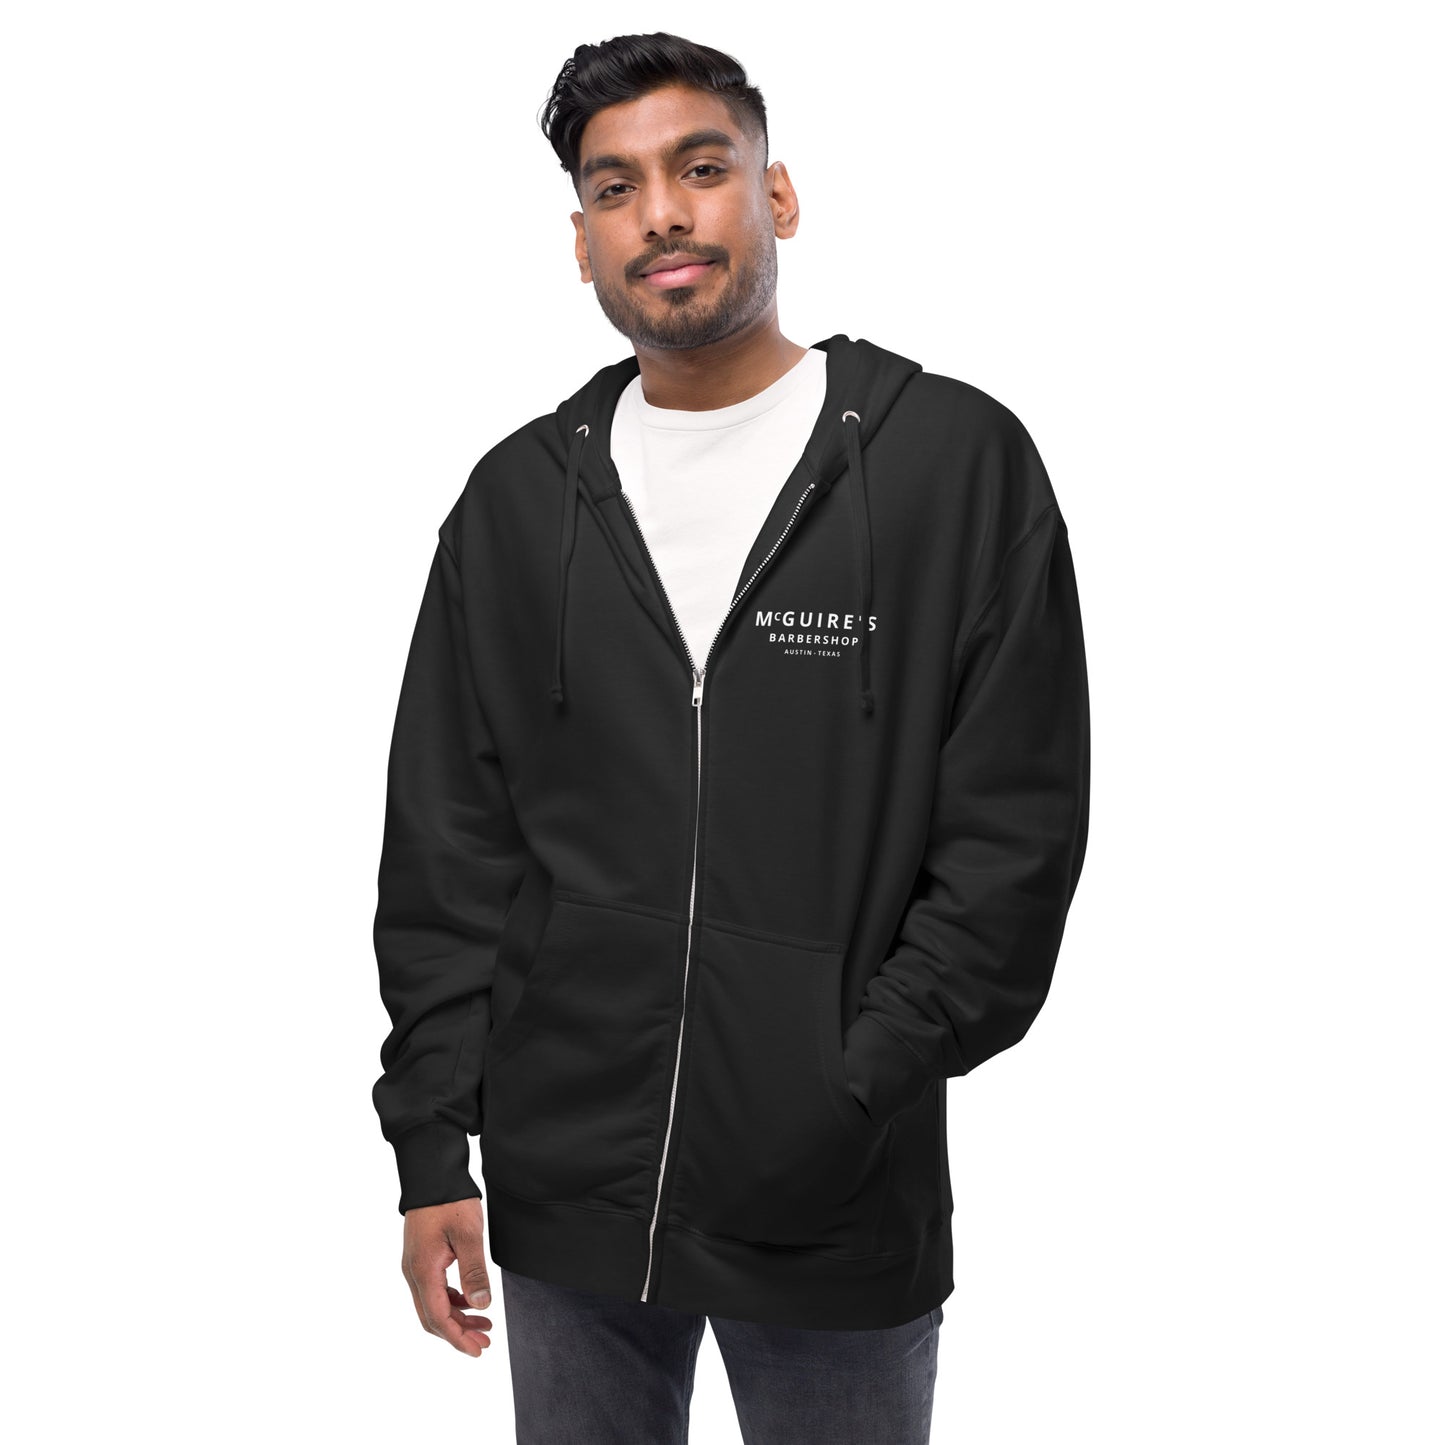 PANTHER Unisex fleece zip up hoodie